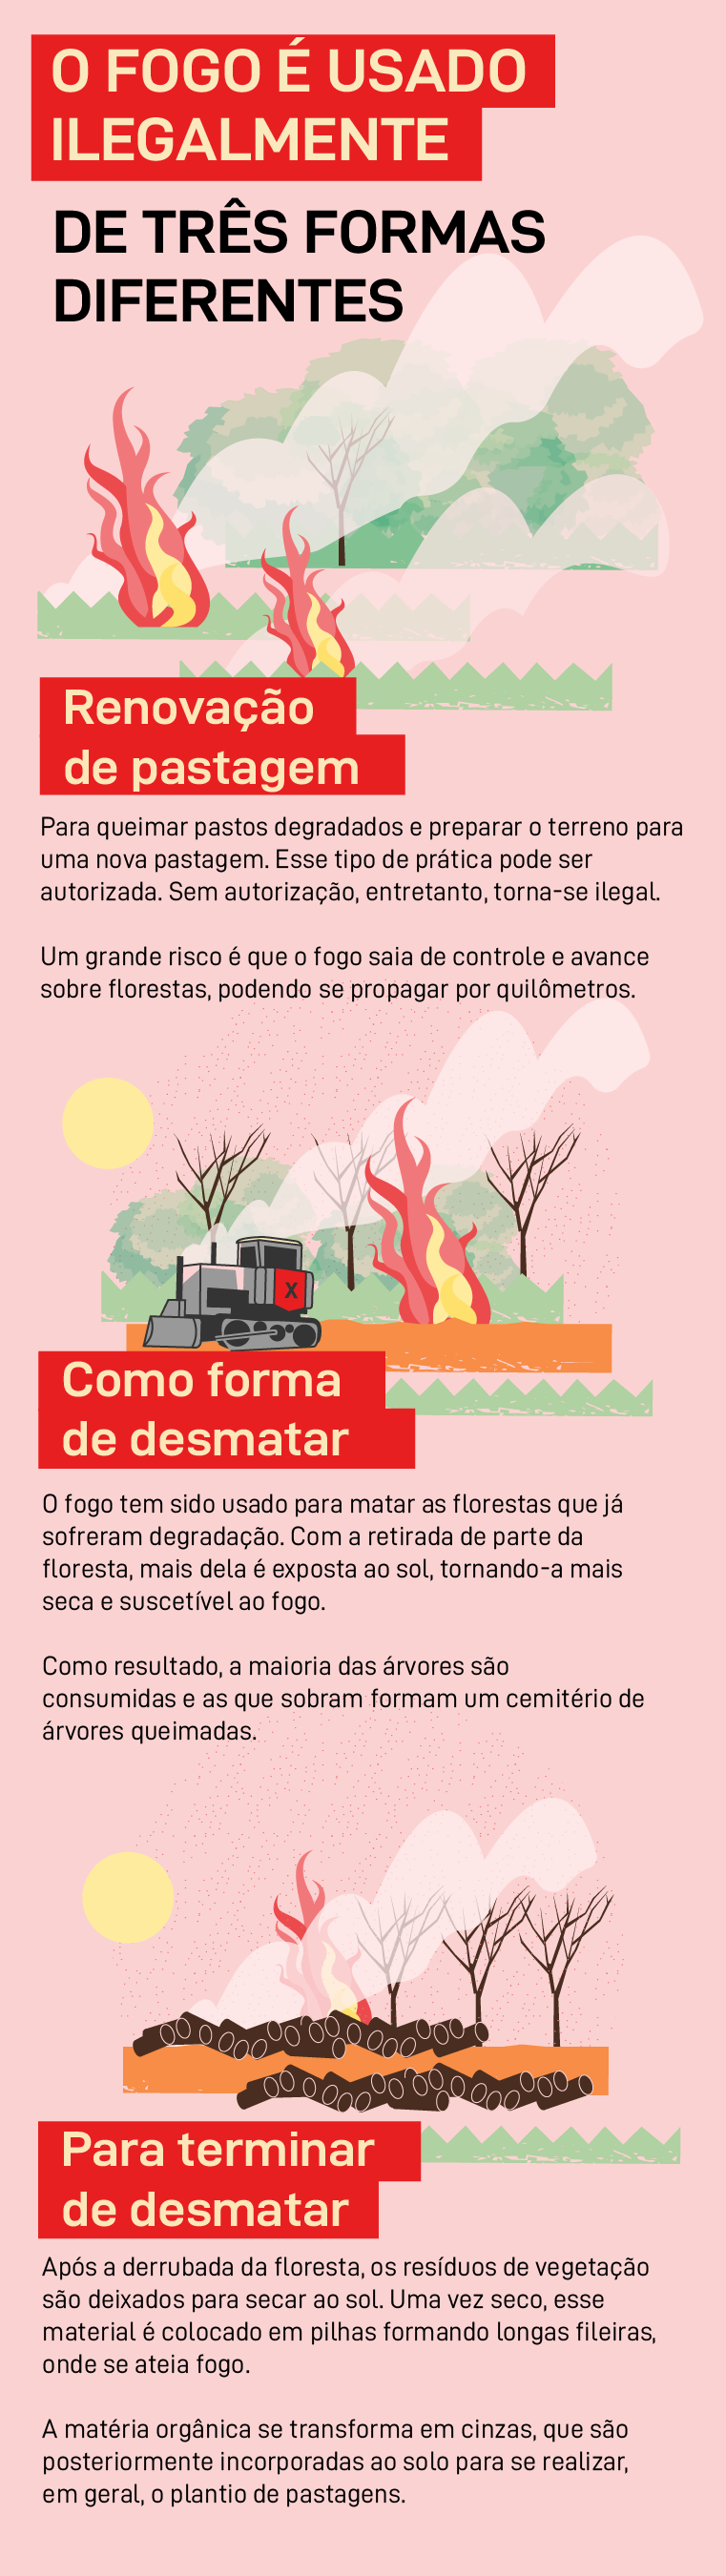 Por que a Amazônia queima?